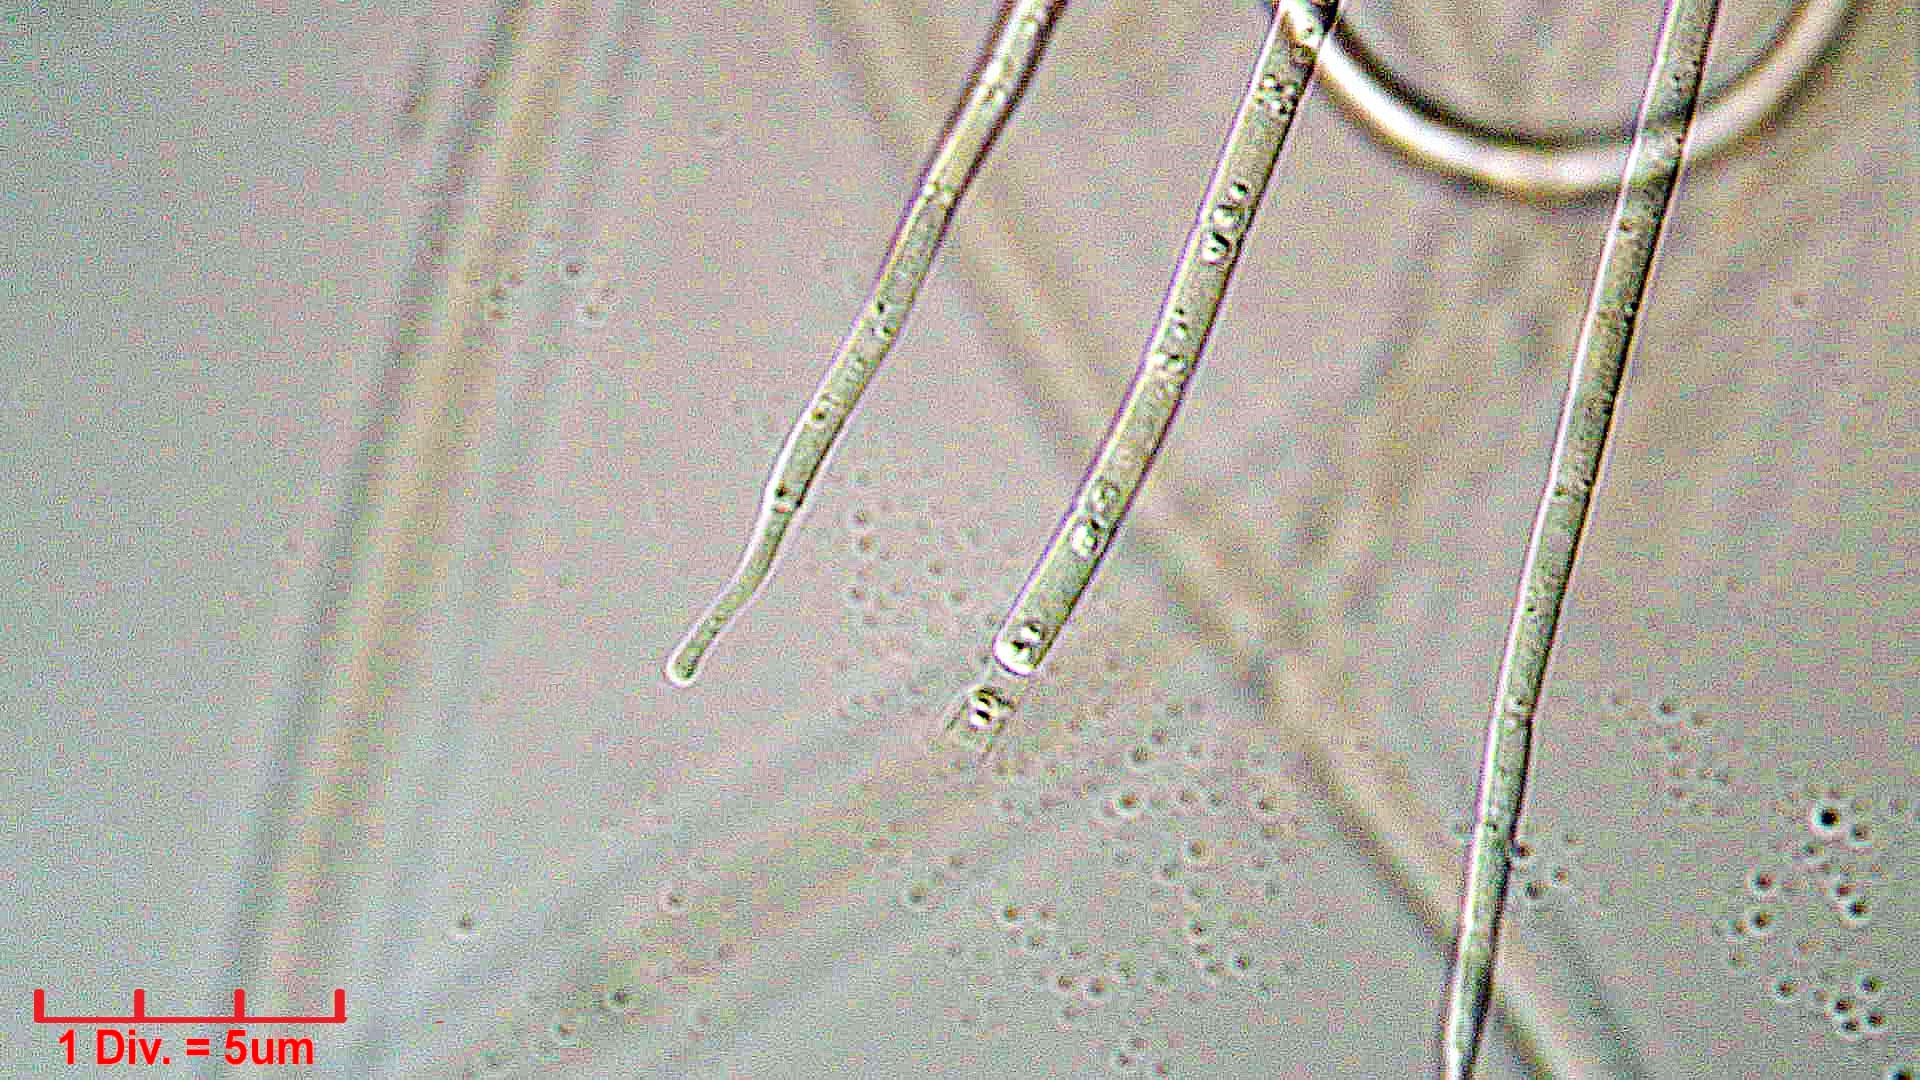 Cyanobacteria/Oscillatoriales/Coleofasciculaceae/Geitlerinema/splendidum/294.jpg